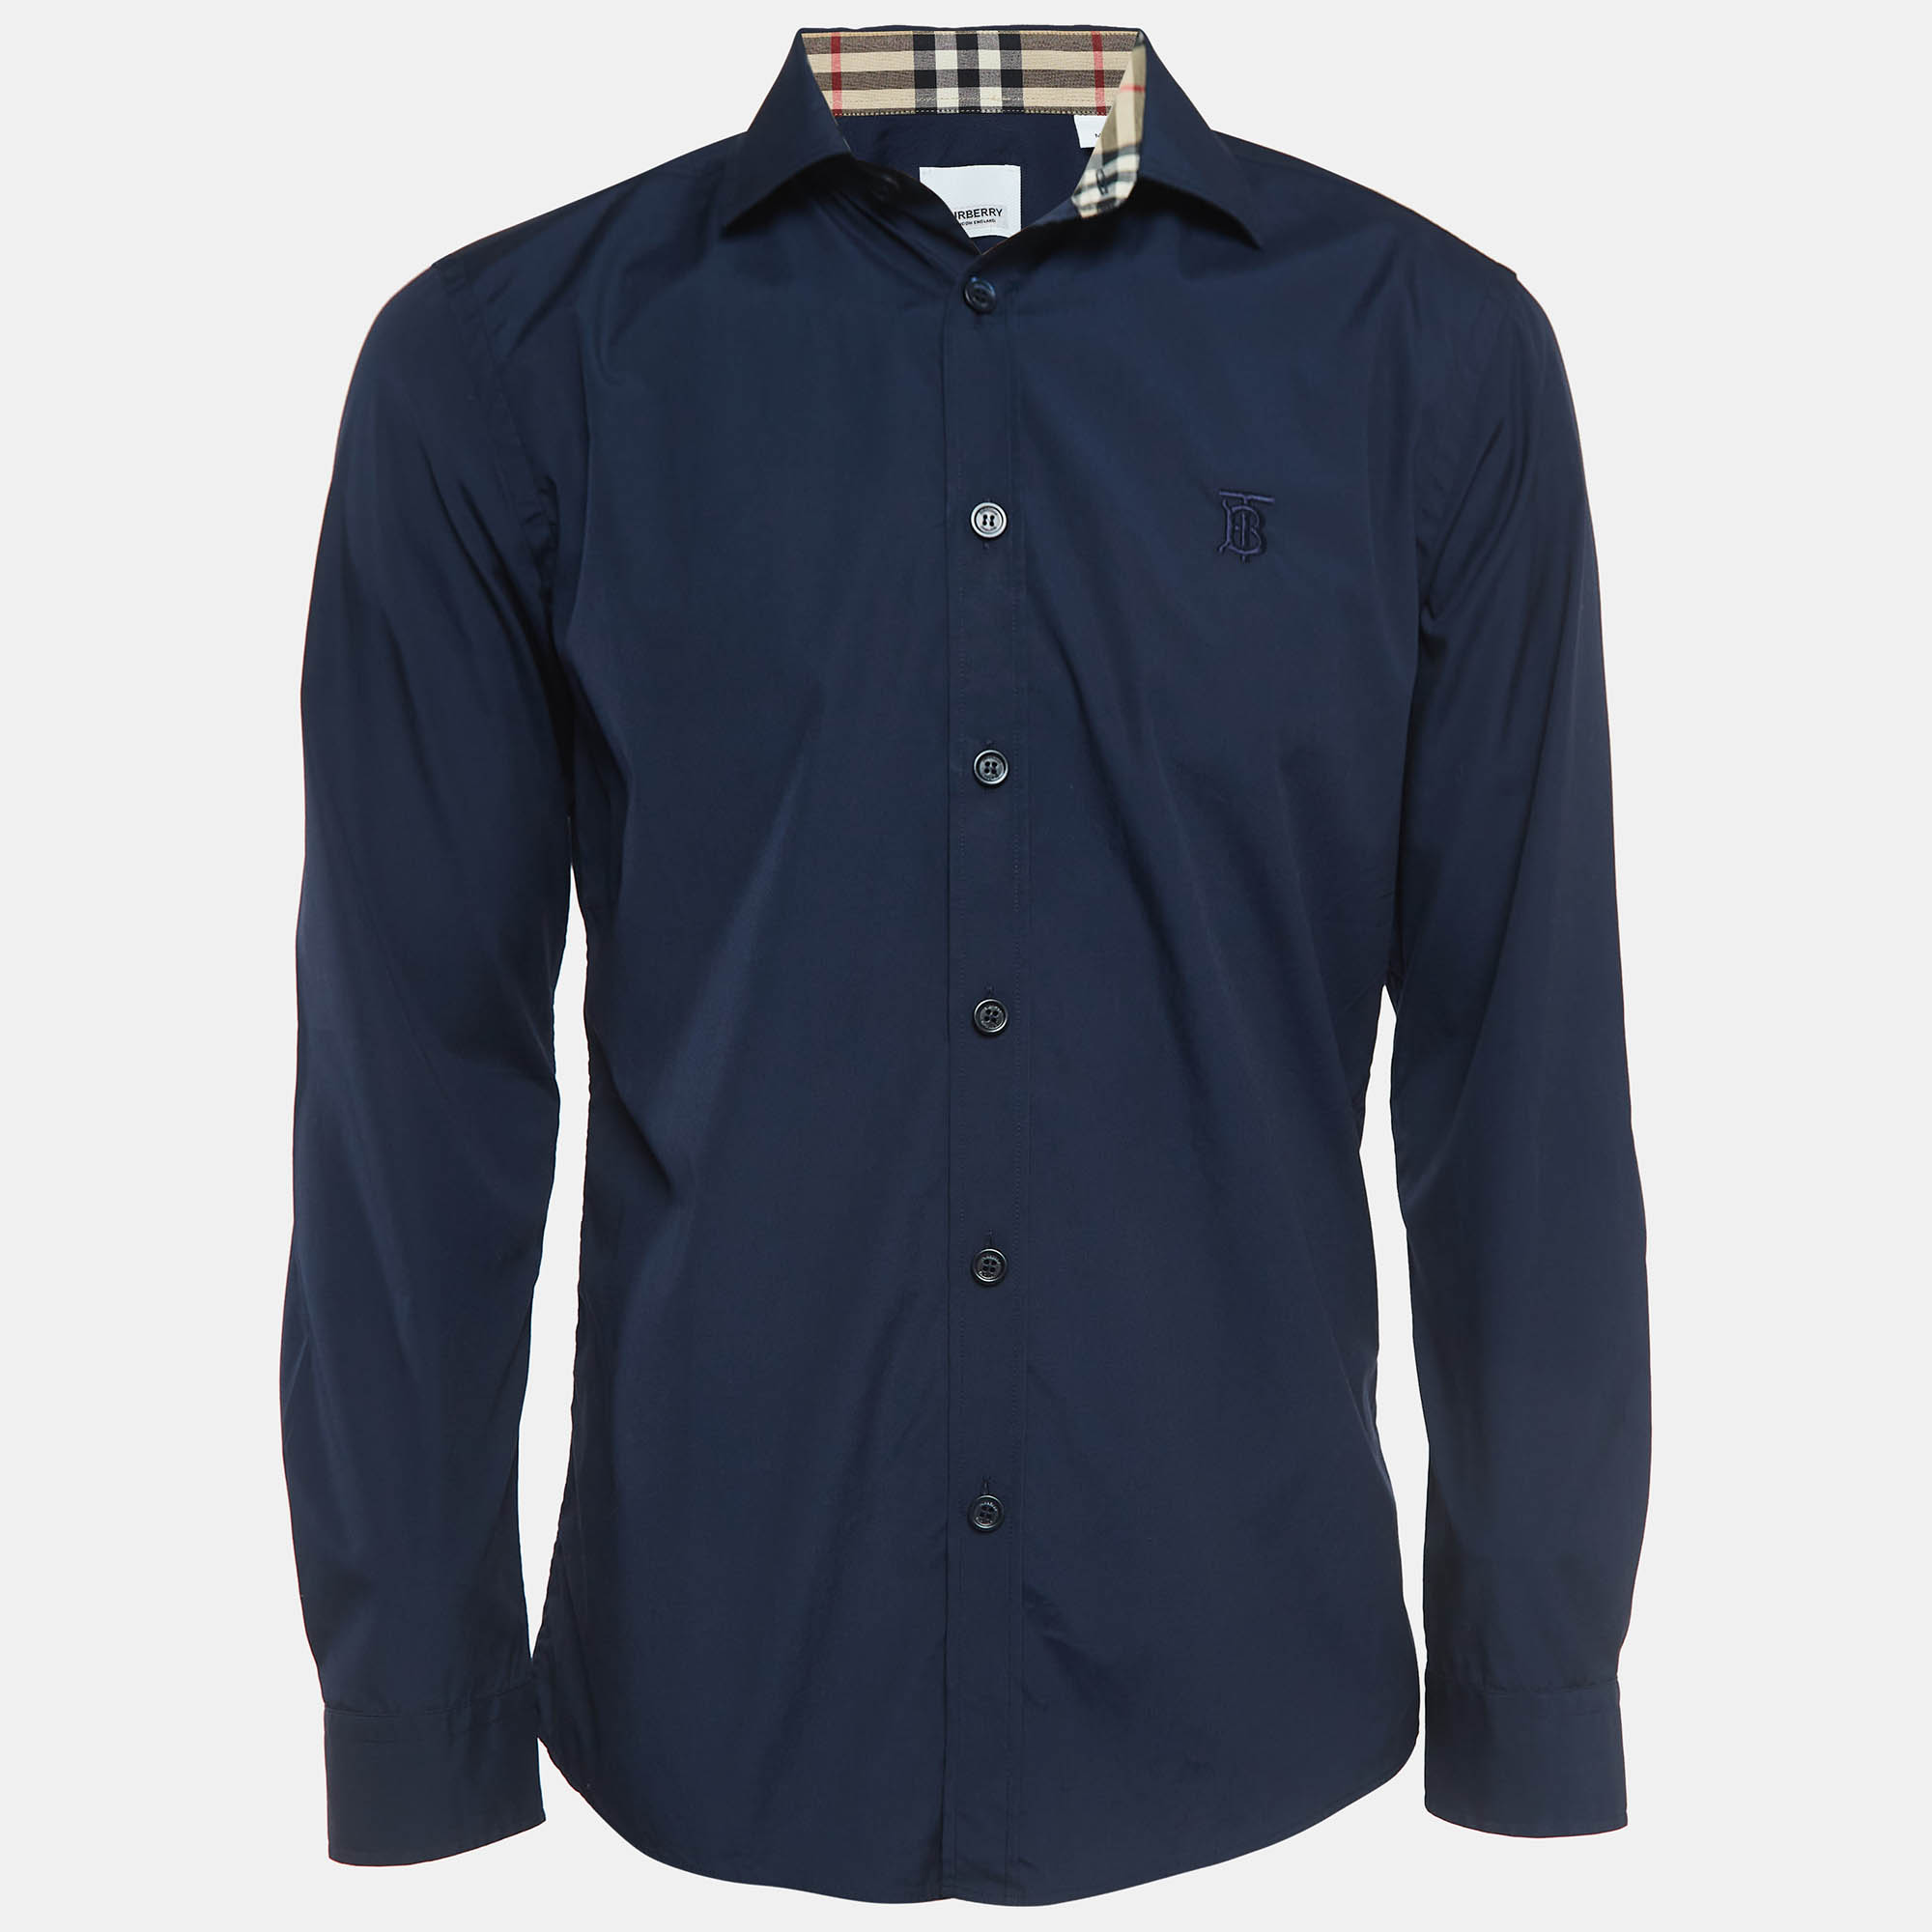 Burberry navy blue poplin button front shirt m